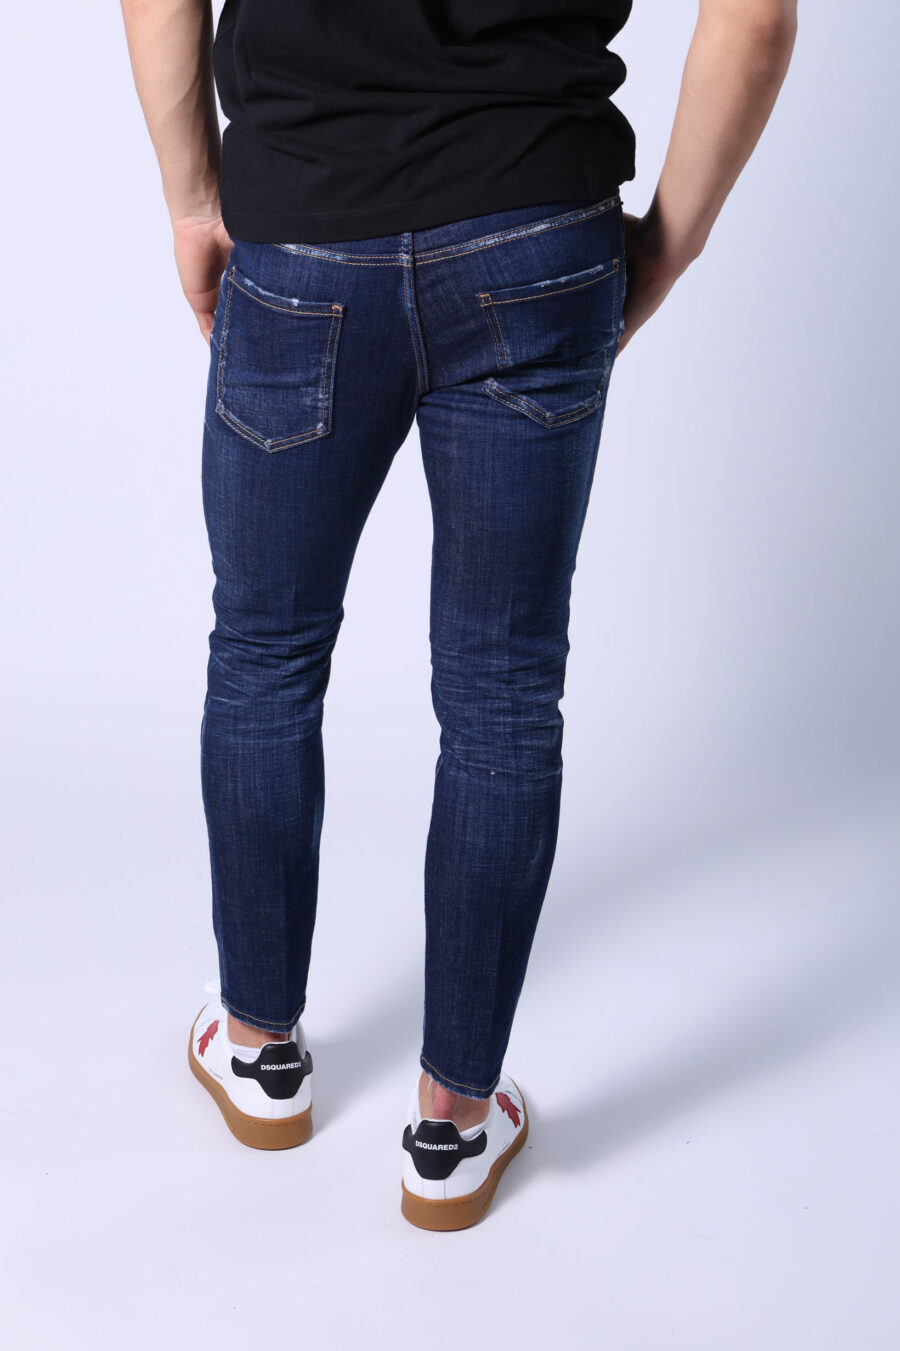 Dunkelblaue "Skater-Jeans" Jeans - Ohne Titel Katalog 05478